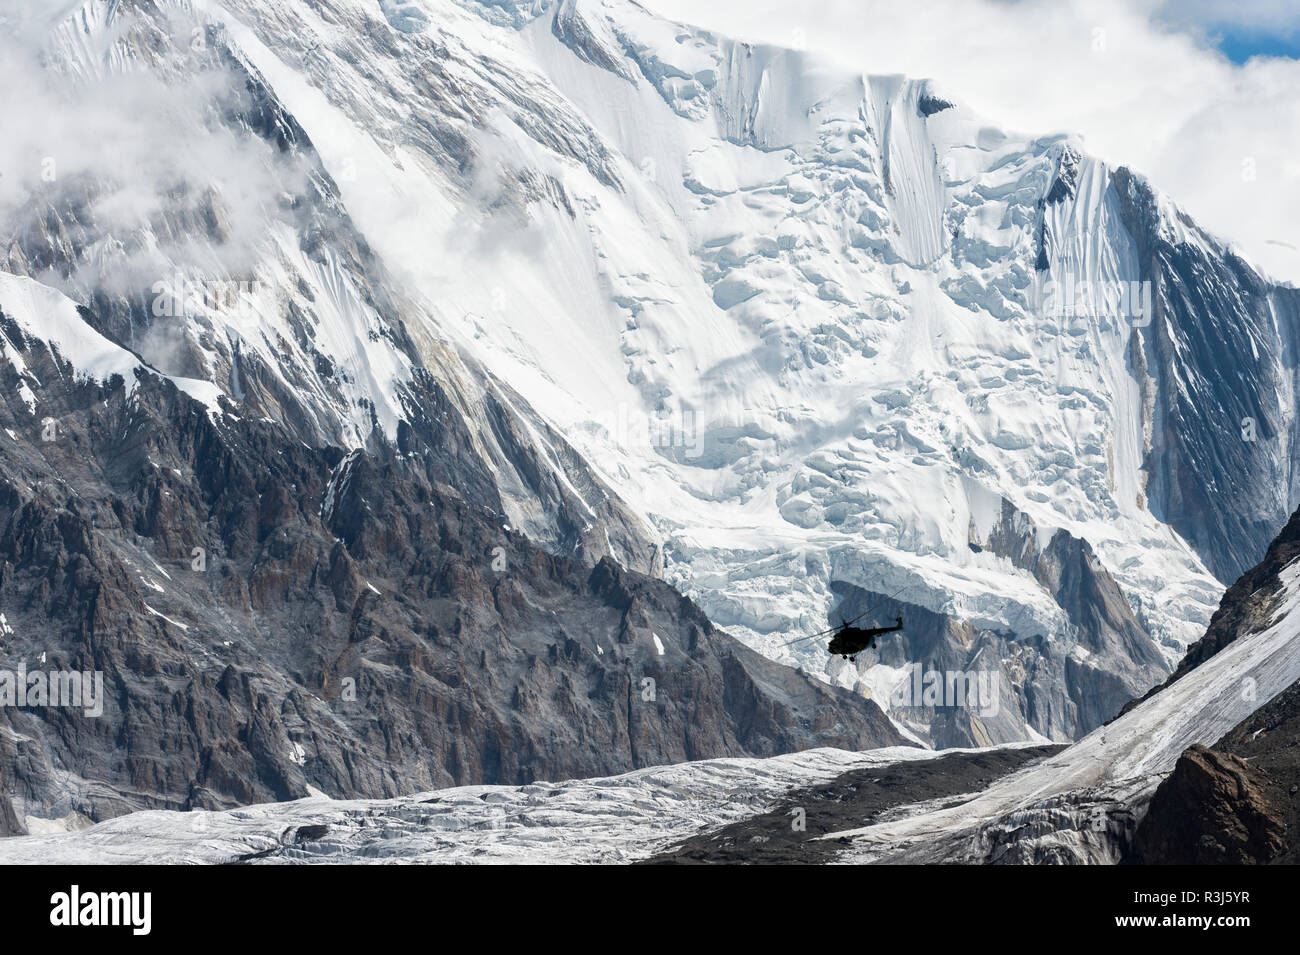 Glacier Engilchek et Khan Tengri Mountain, centrale de montagnes du Tian Shan, frontière du Kirghizistan et de la Chine, le Kirghizistan Banque D'Images